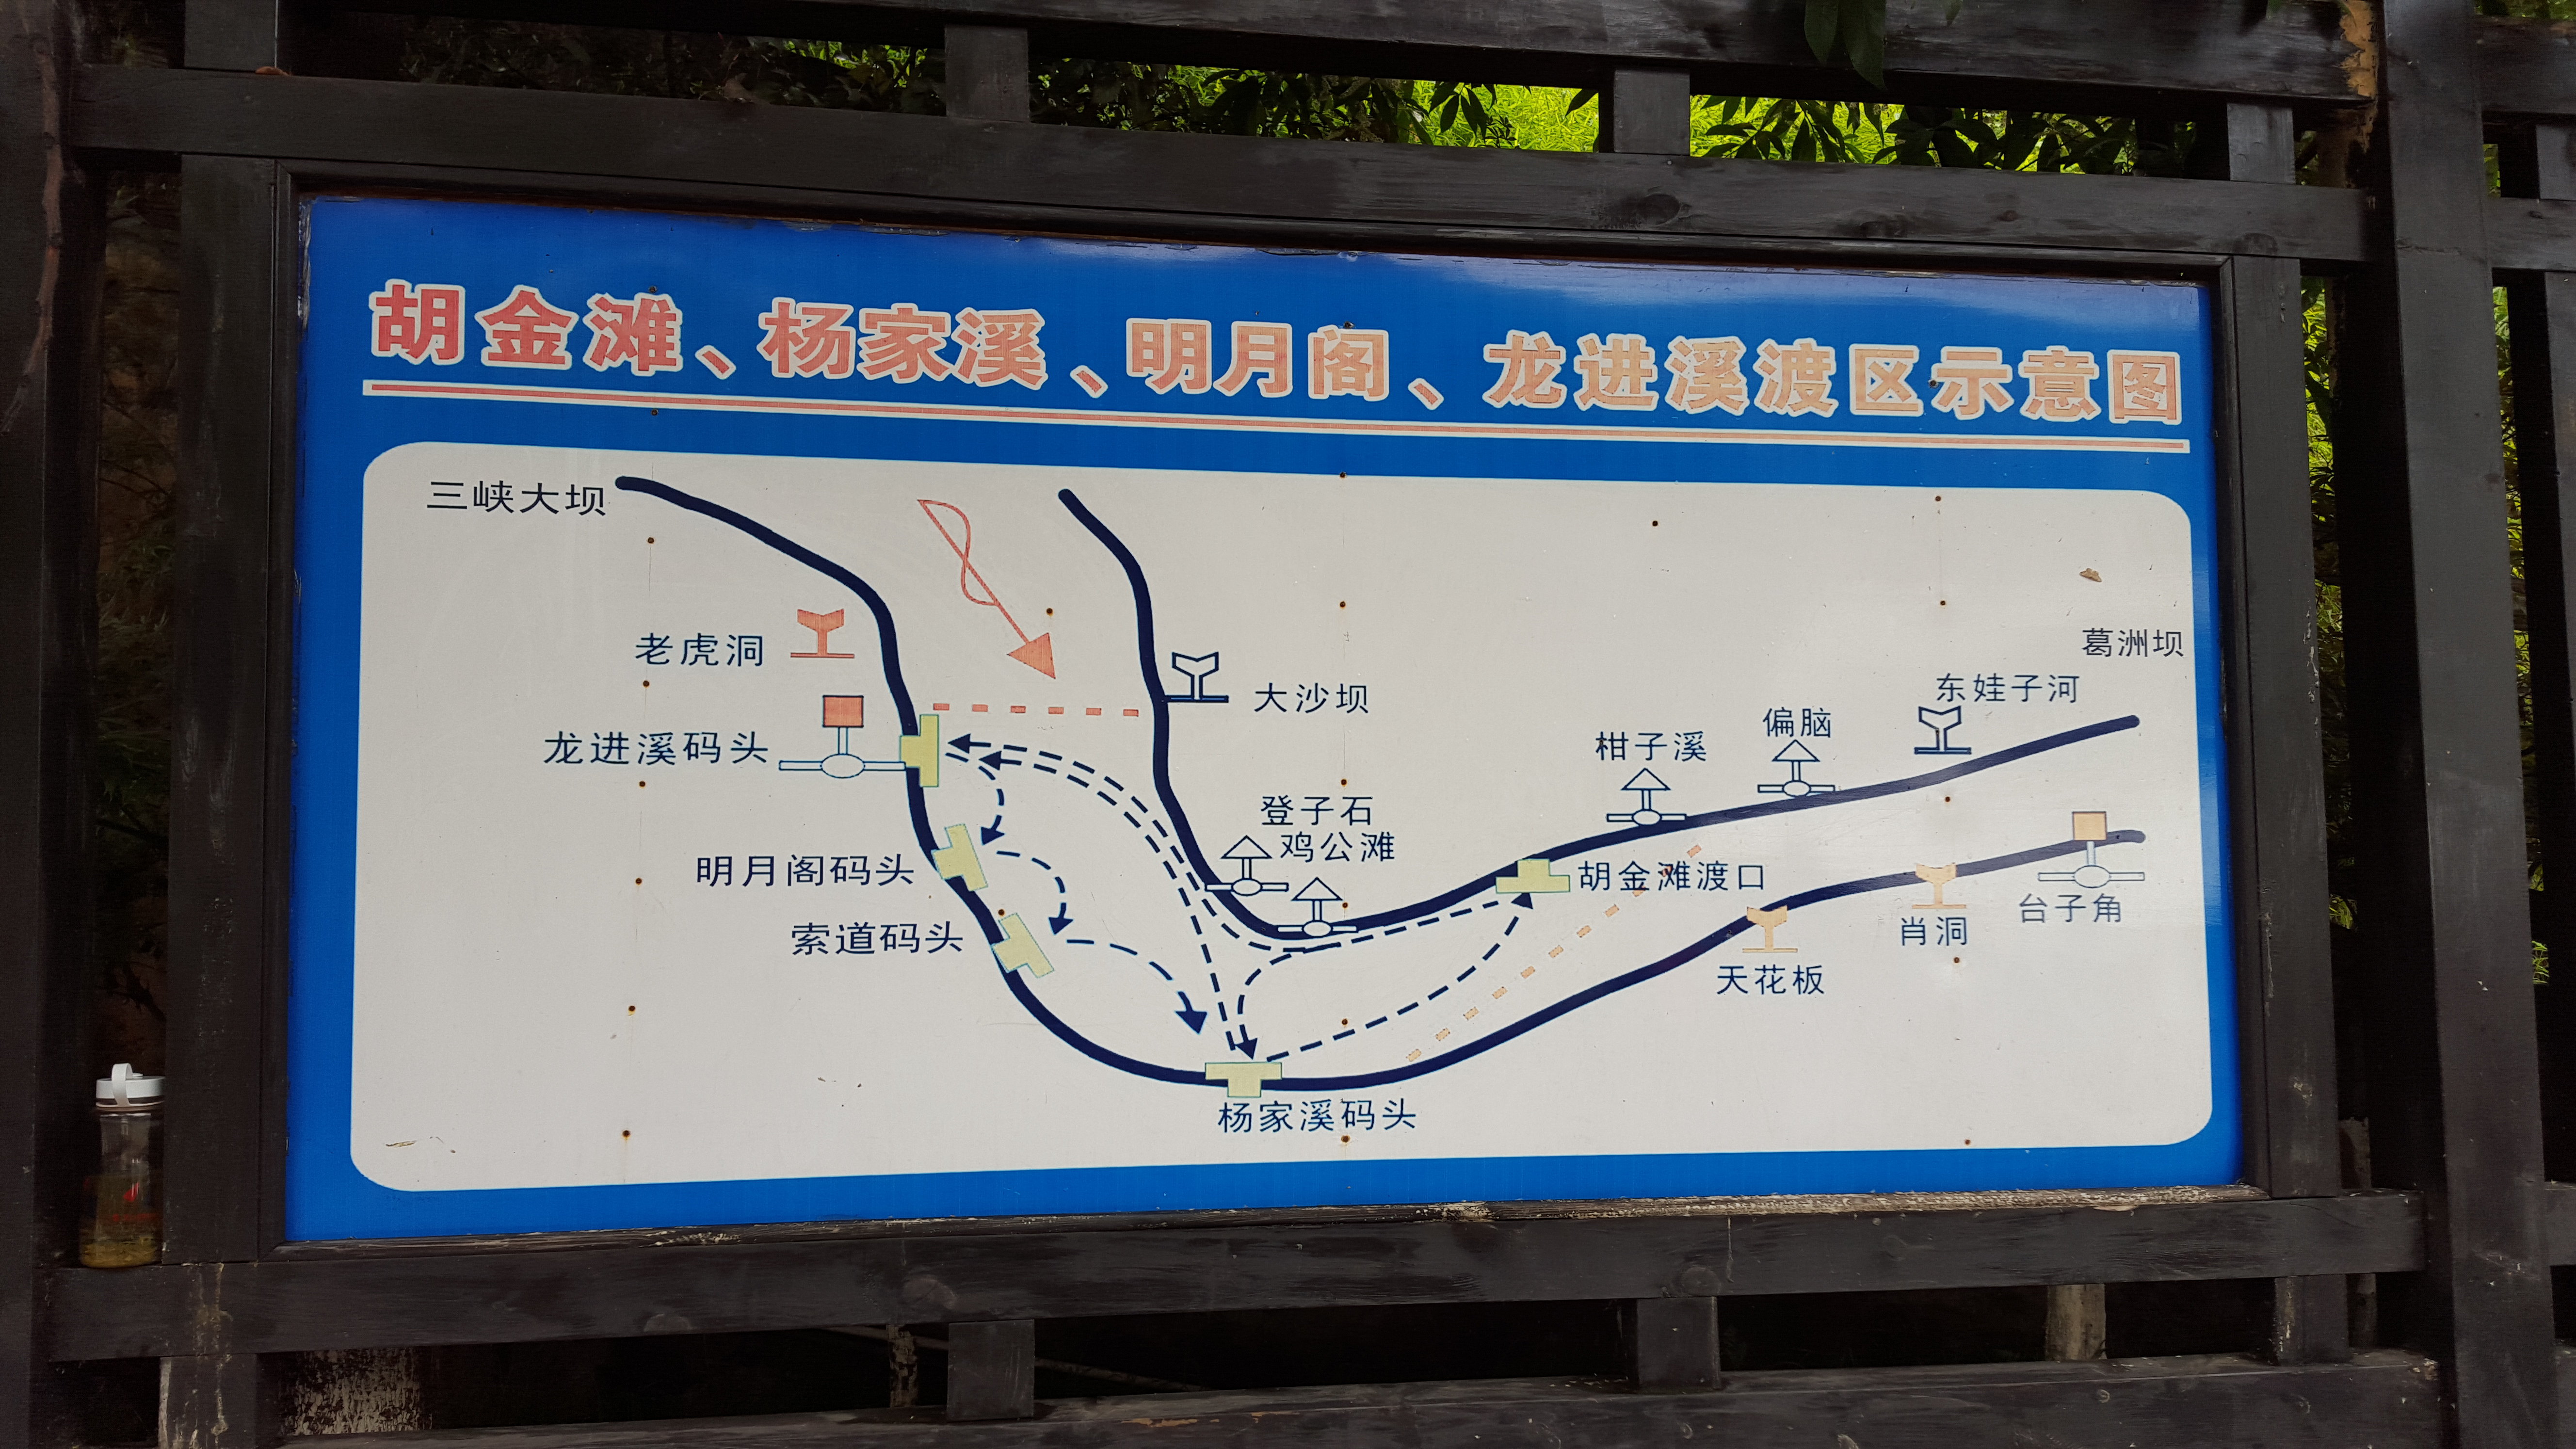 三峡人家风景区,是aaaaa级旅游景区,位于长江三峡中最为奇幻壮丽